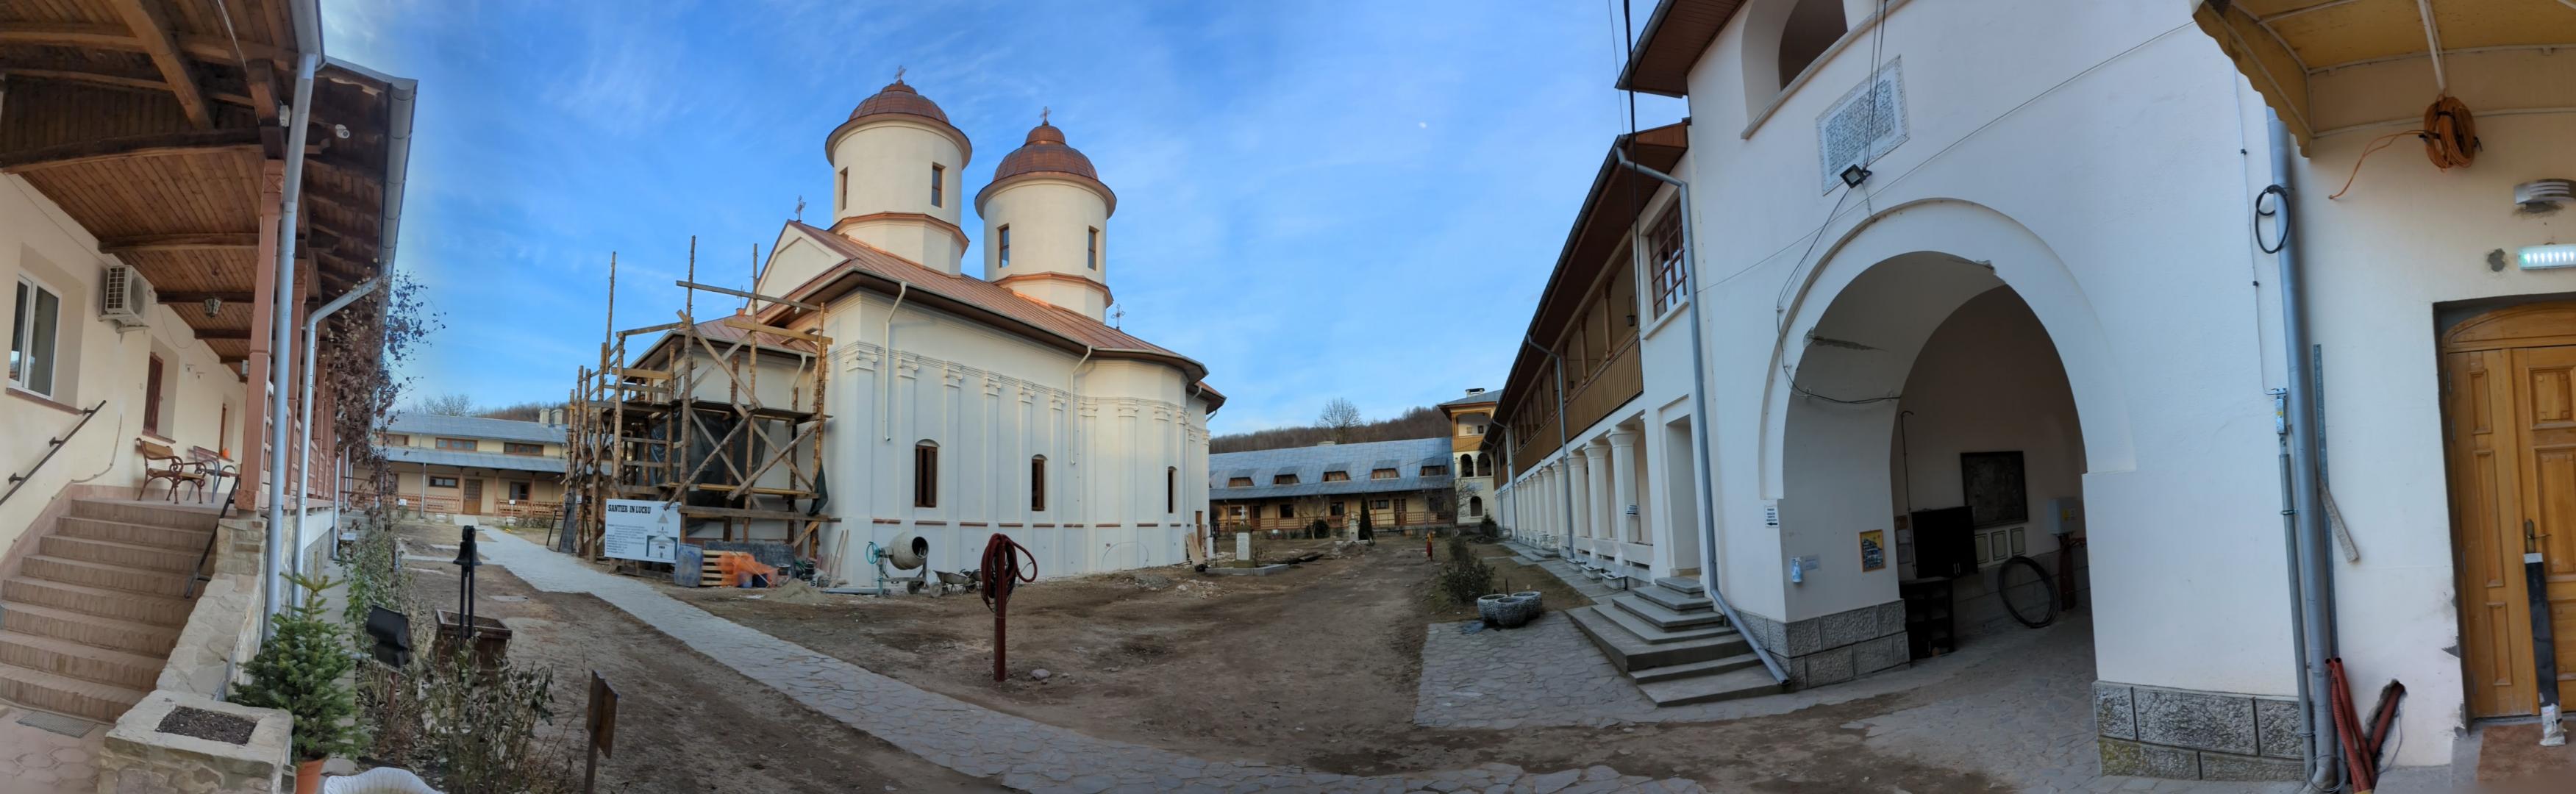 Mănăstirea Viforâta